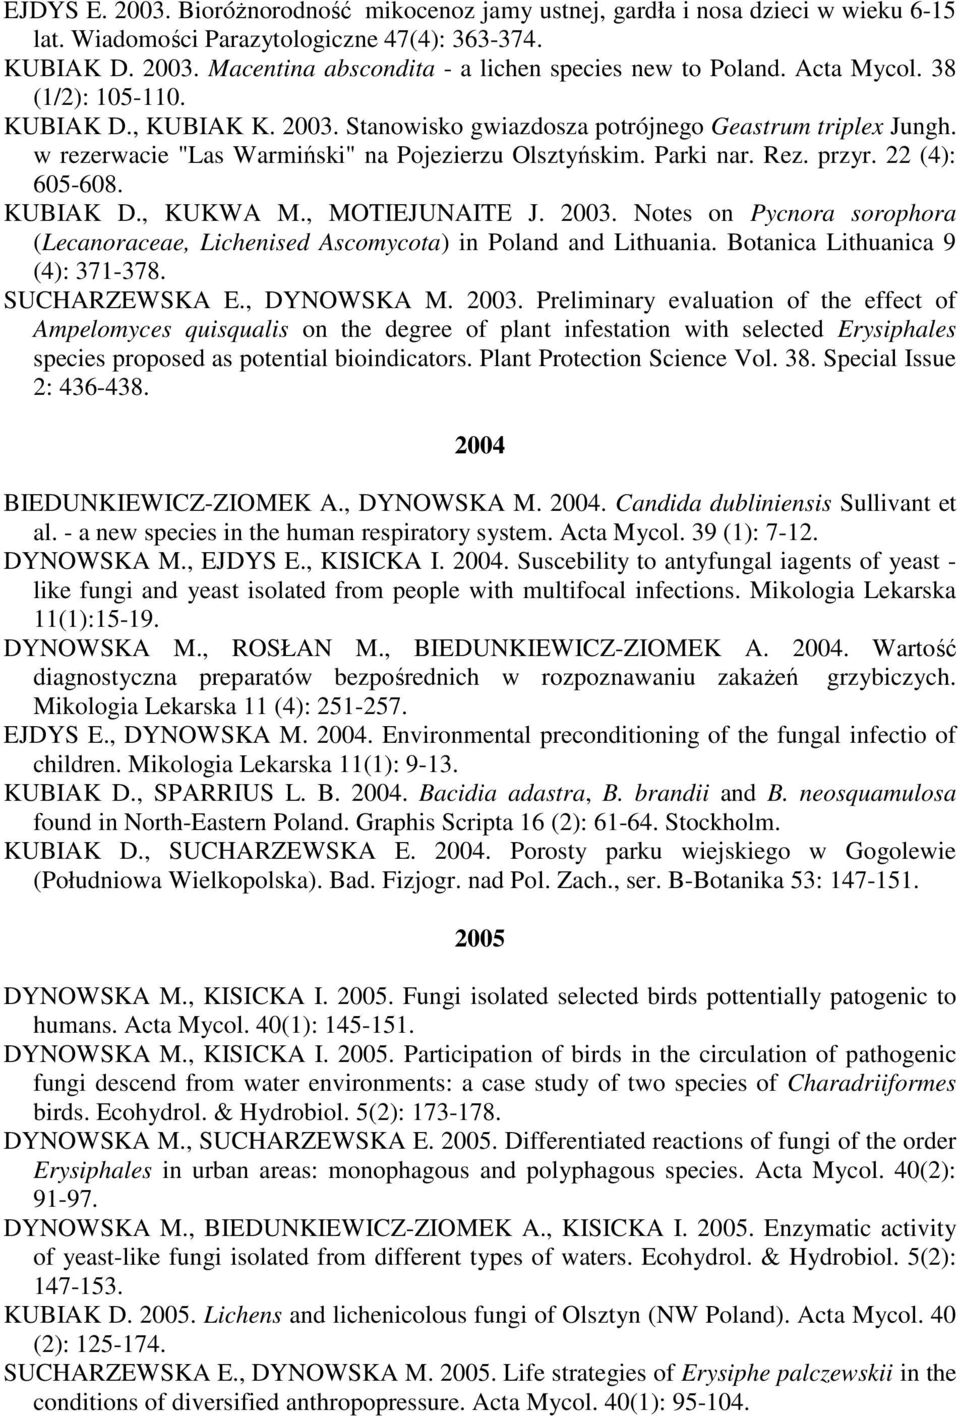 22 (4): 605-608. KUBIAK D., KUKWA M., MOTIEJUNAITE J. 2003. Notes on Pycnora sorophora (Lecanoraceae, Lichenised Ascomycota) in Poland and Lithuania. Botanica Lithuanica 9 (4): 371-378.